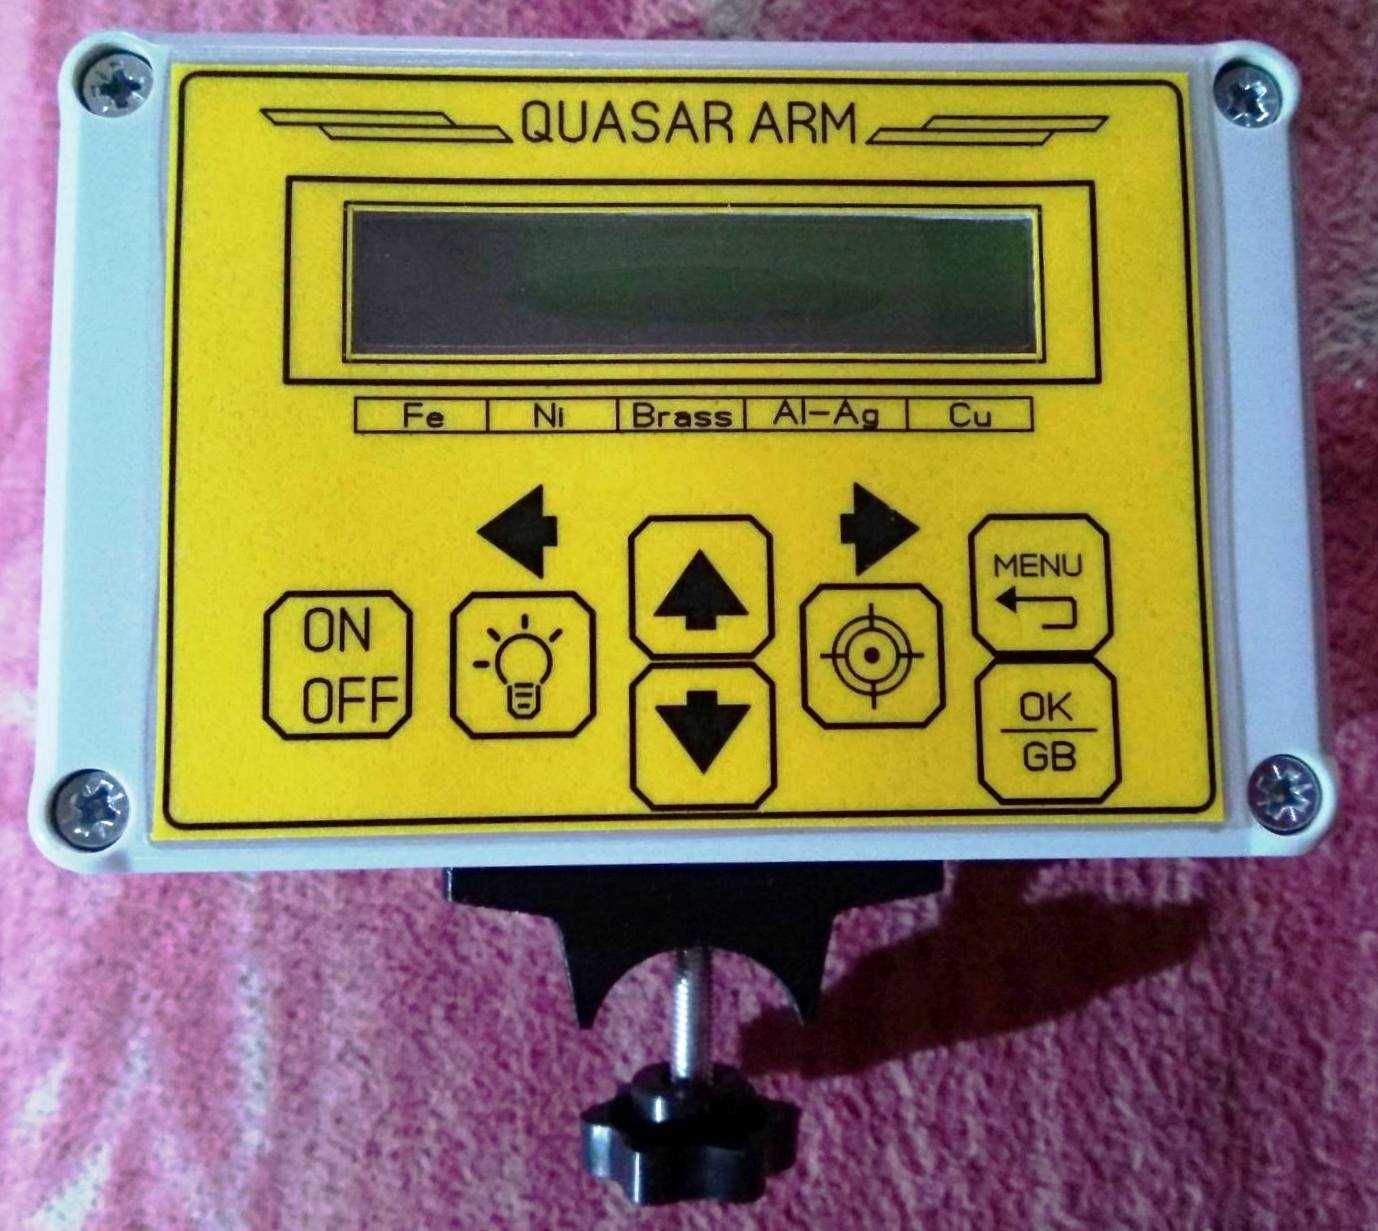 Готовый блок Квазар АРМ(Quasar ARM) с большим индикатором.